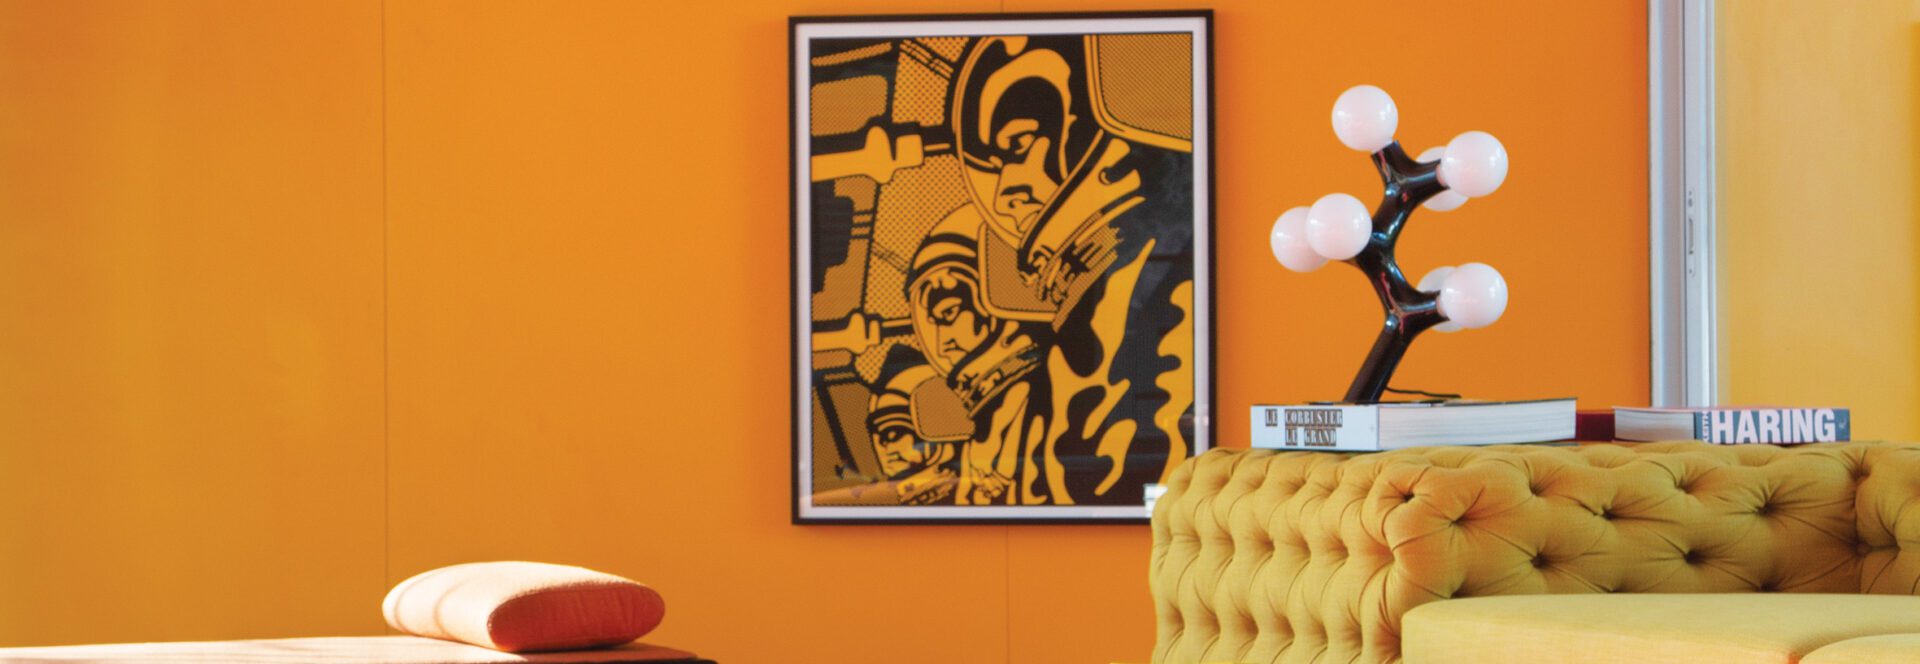 Os tons intensos da cartela da Formica valorizam as peças de design e as obras de arte da casa. | Foto: Divulgação